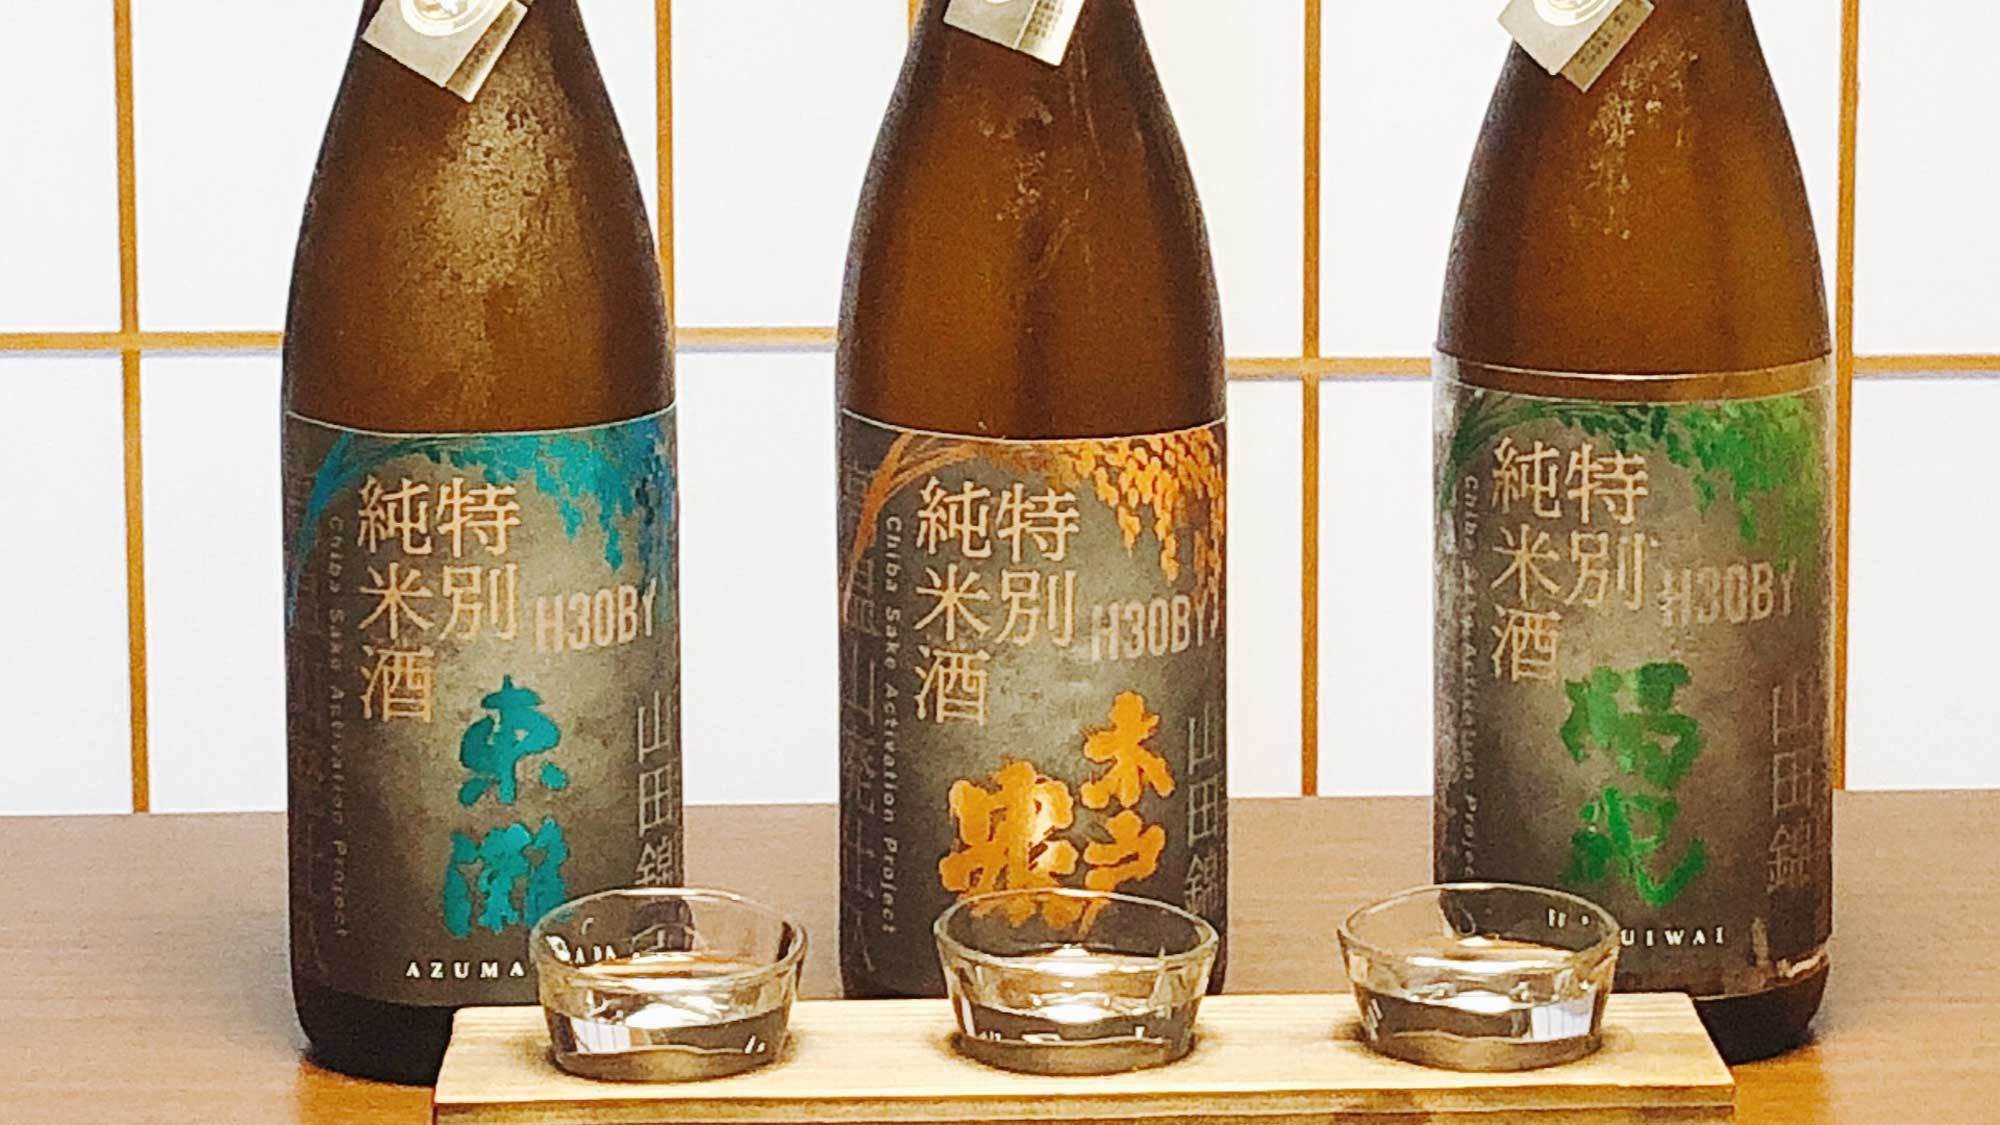 【ご夕食】千葉のいすみ産山田錦を原料に千葉の天然水で醸した日本酒の飲み比べセット。